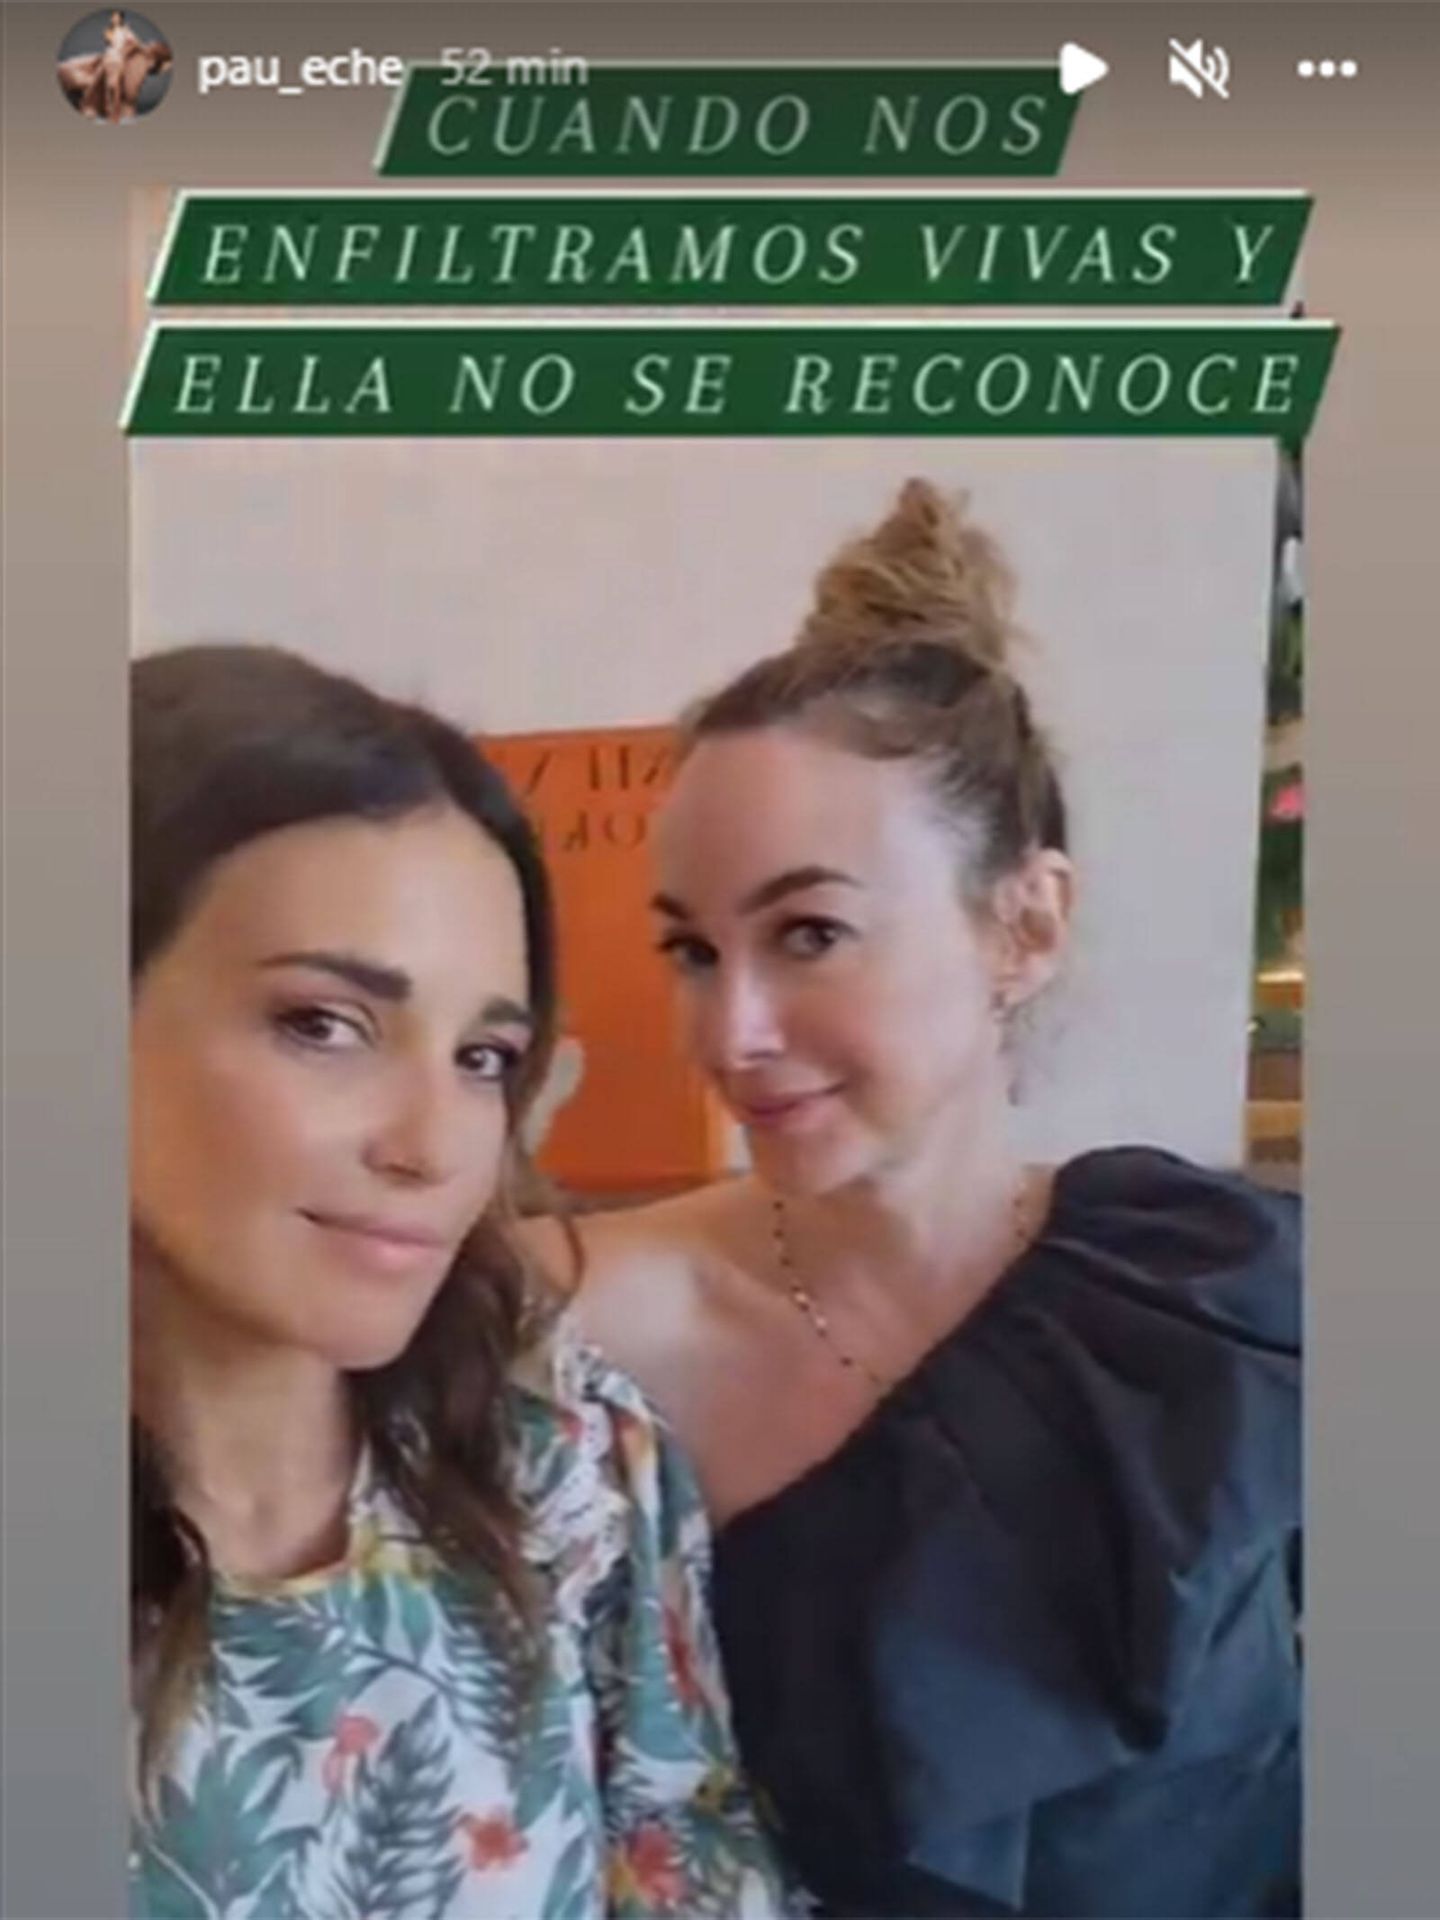 Paula Echevarría y Marta Hazas con el filtro de Instagram. (Instagram/@pau_eche)